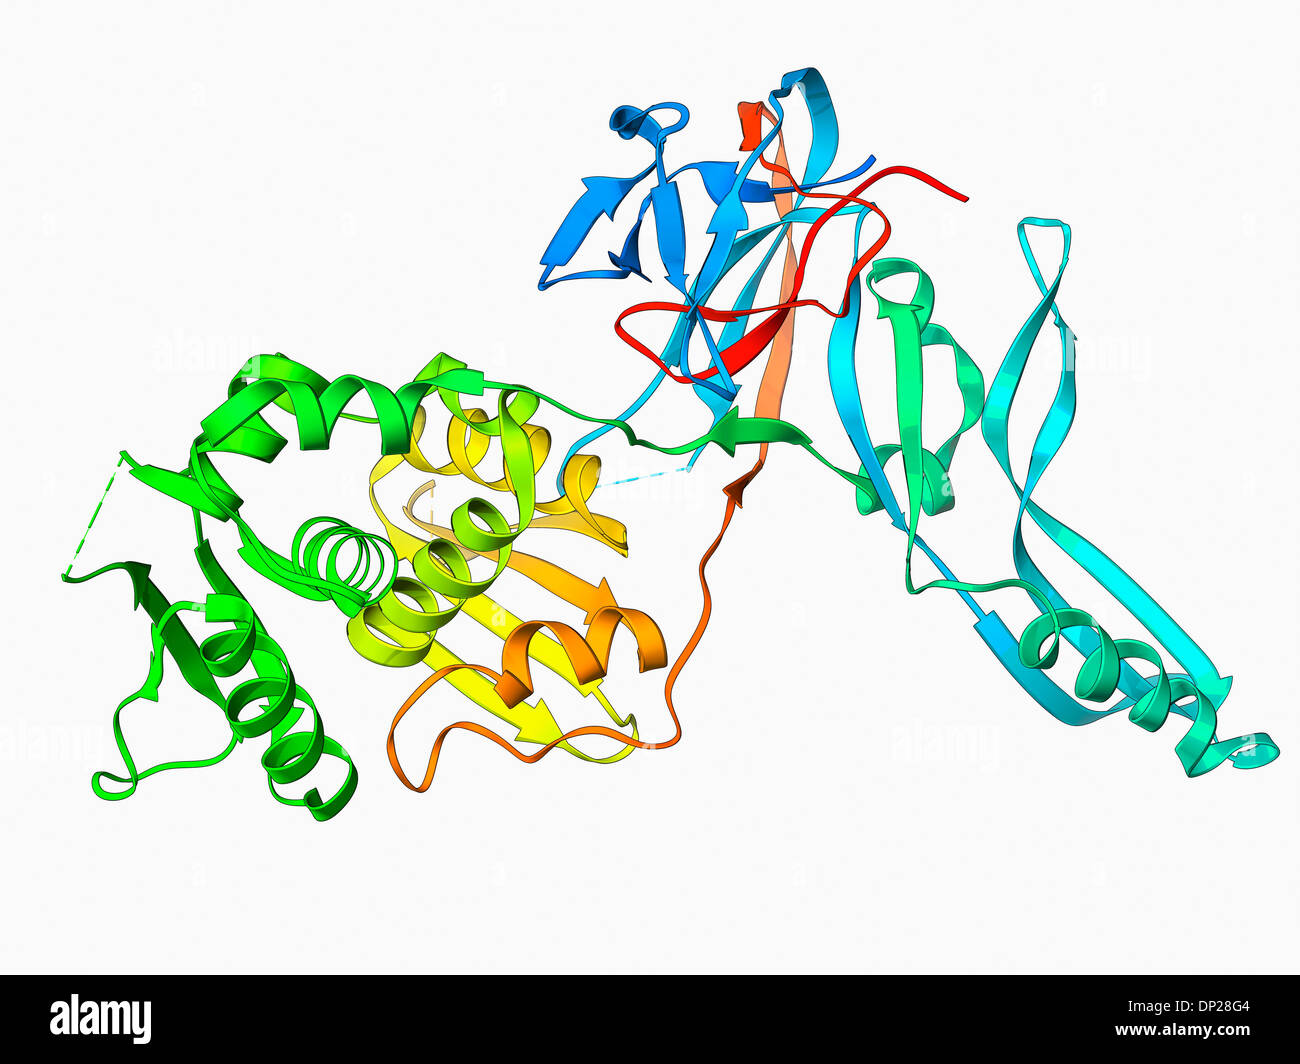 VMA-1 derived endonuclease molecule Stock Photo